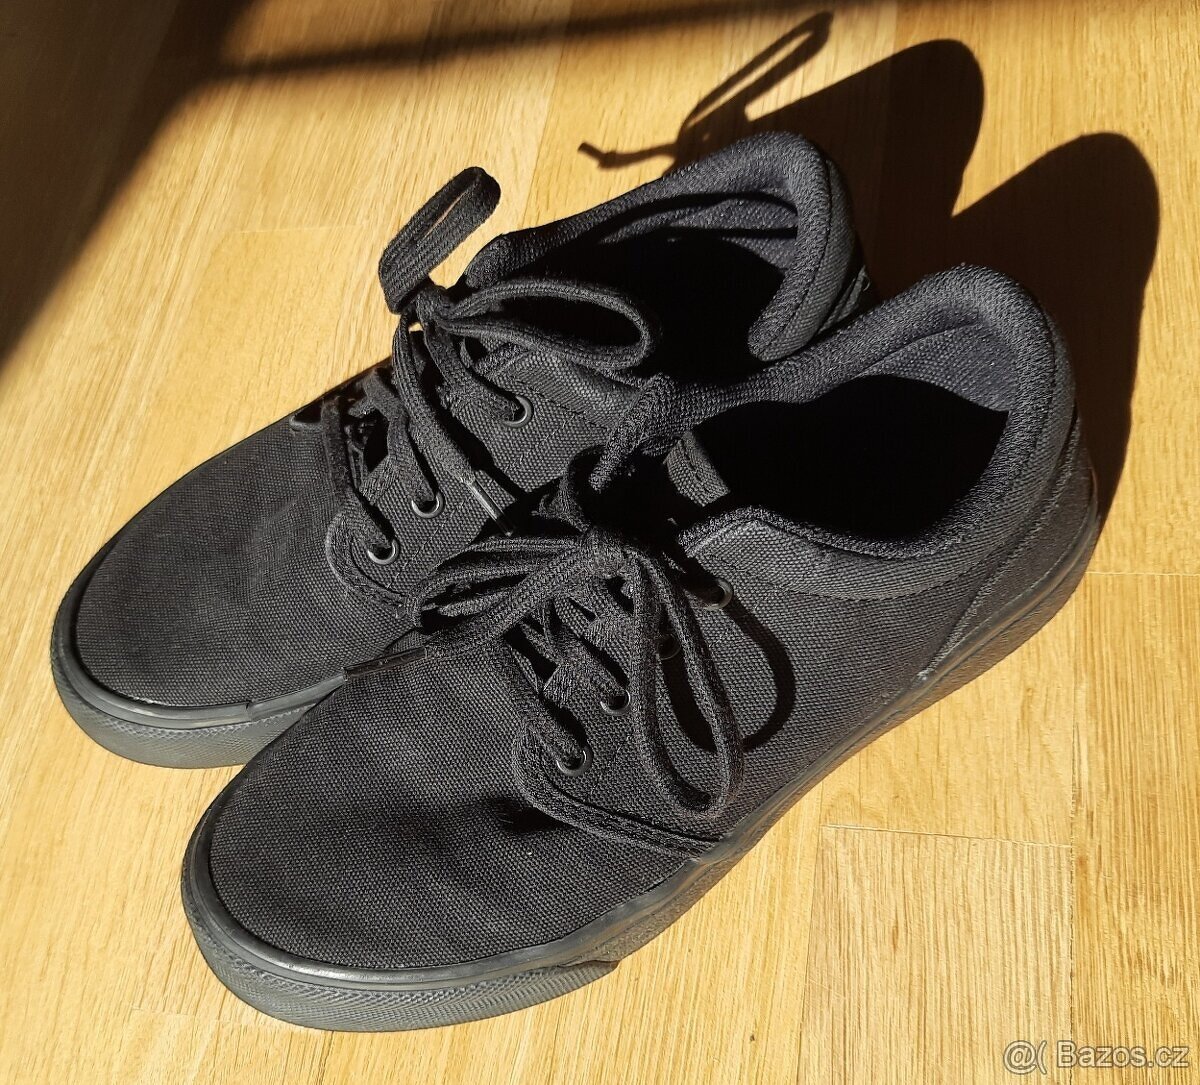 Černé sportovní skateboardové boty Decathlon vel. 39